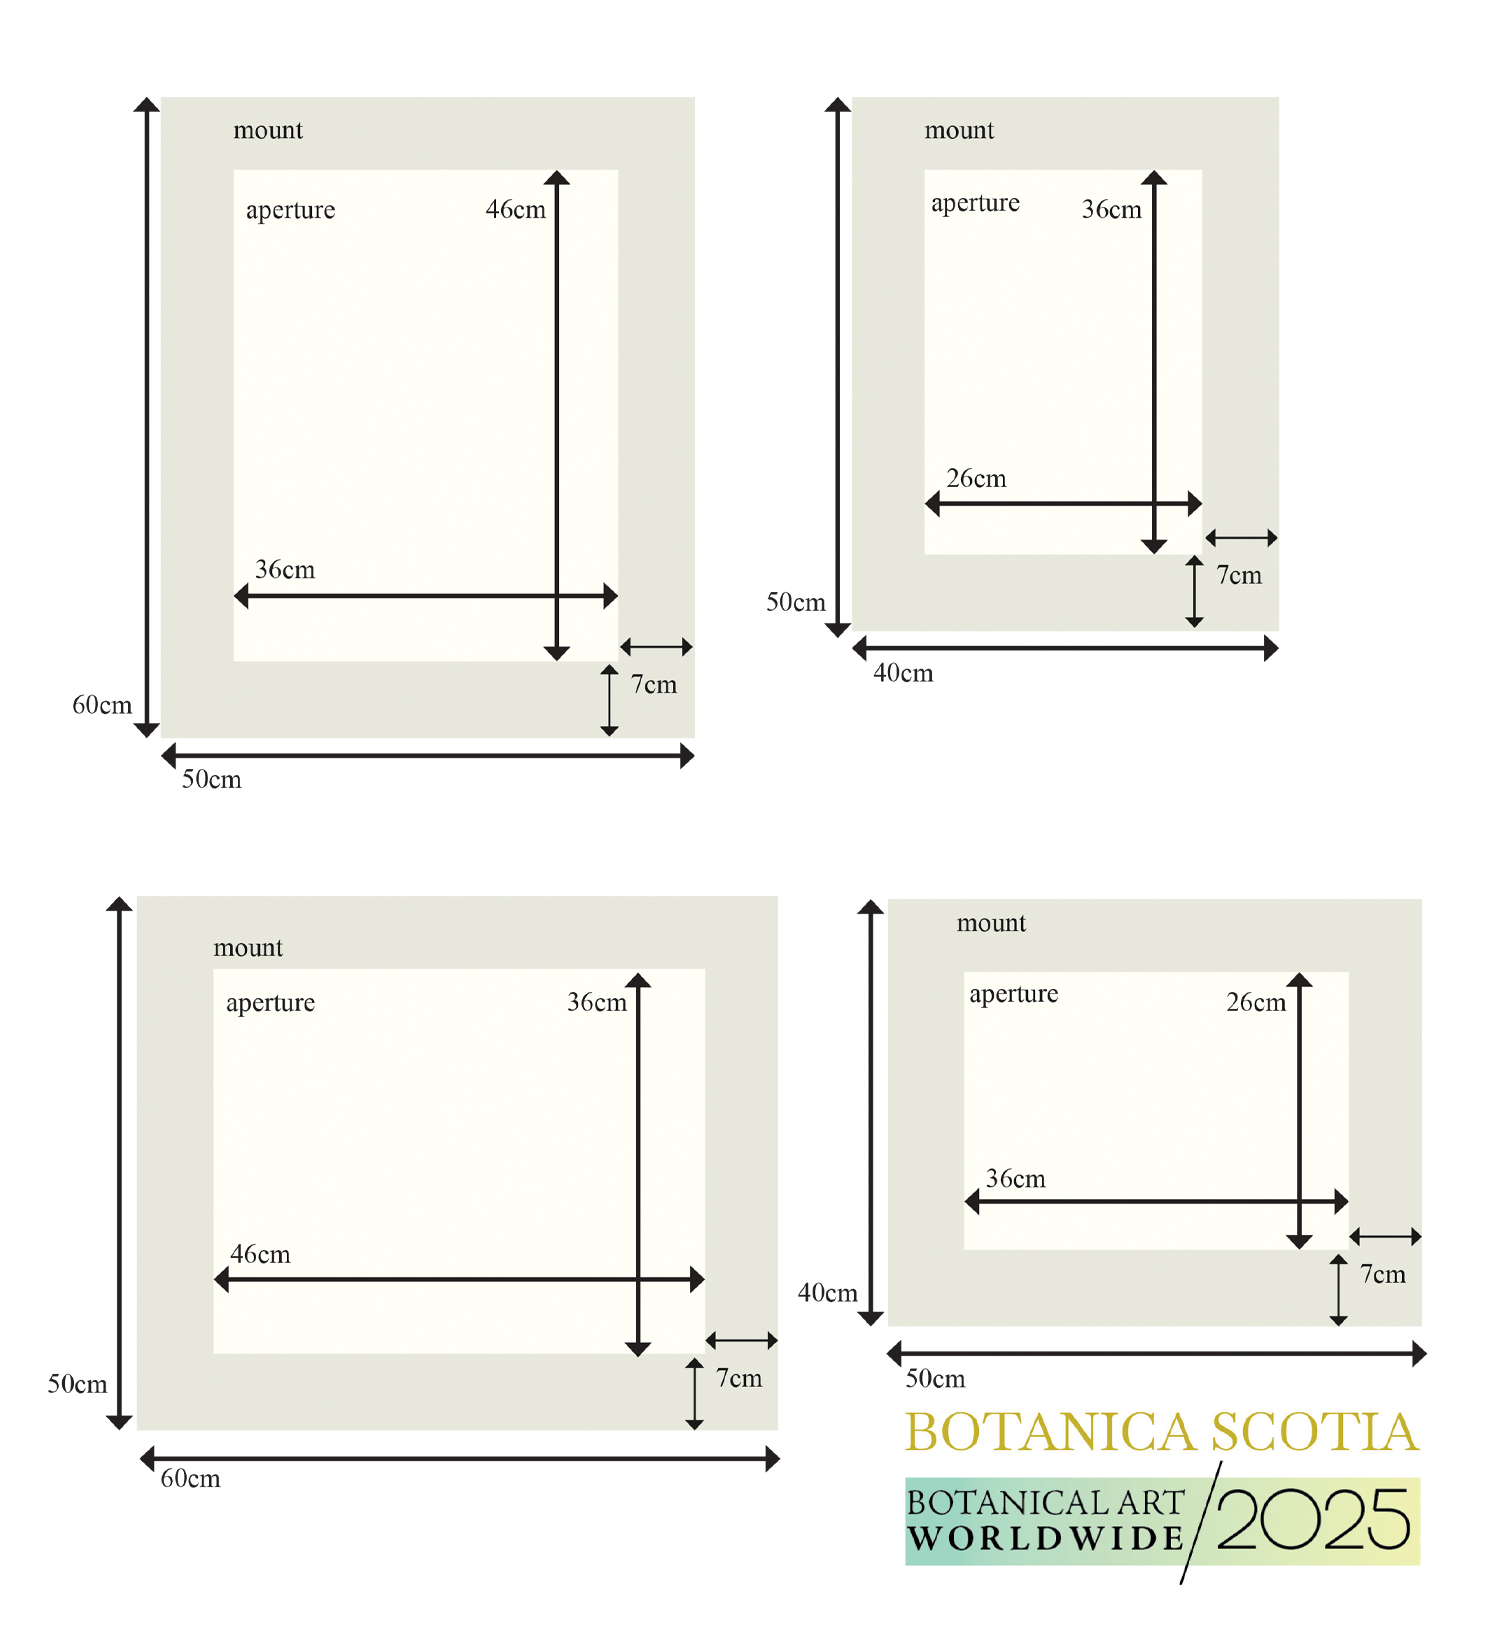 Botanica Scotia image illustration and mount size layout